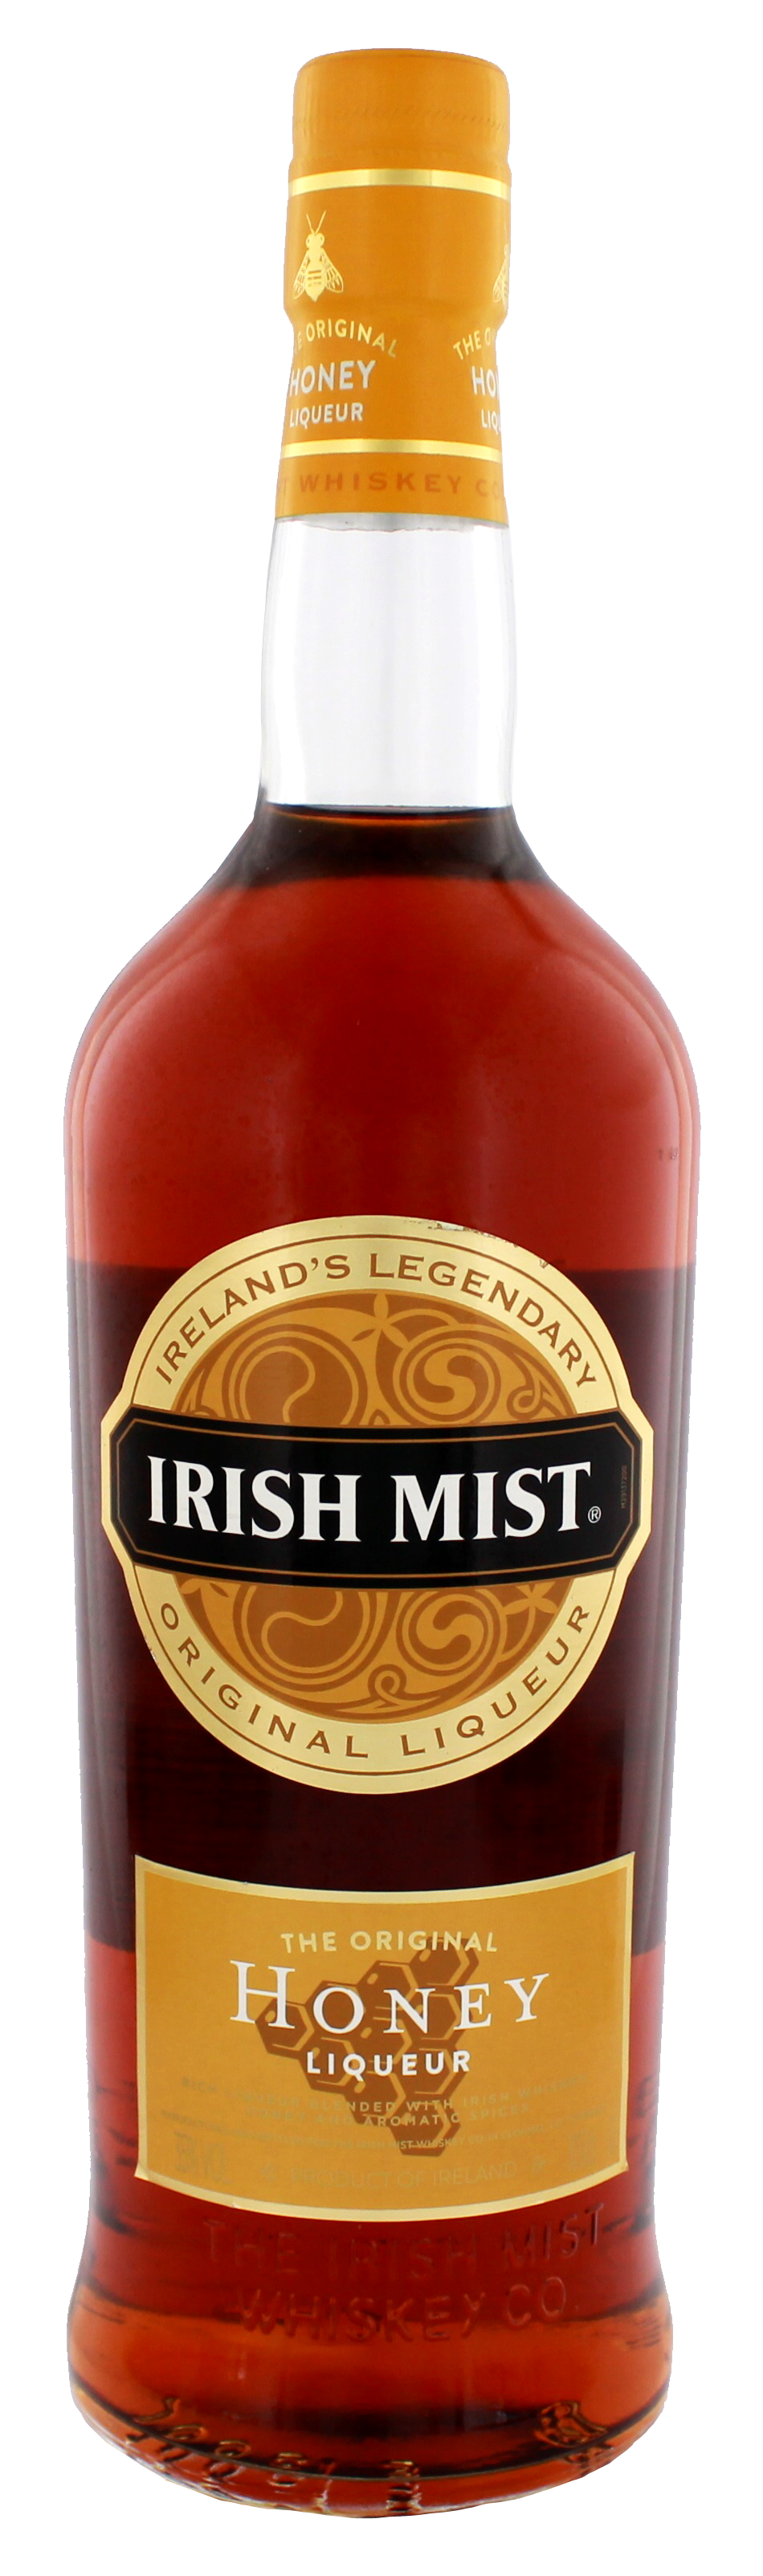 Irish Mist Whiskey Liqueur jetzt kaufen im Drinkology Online Shop!